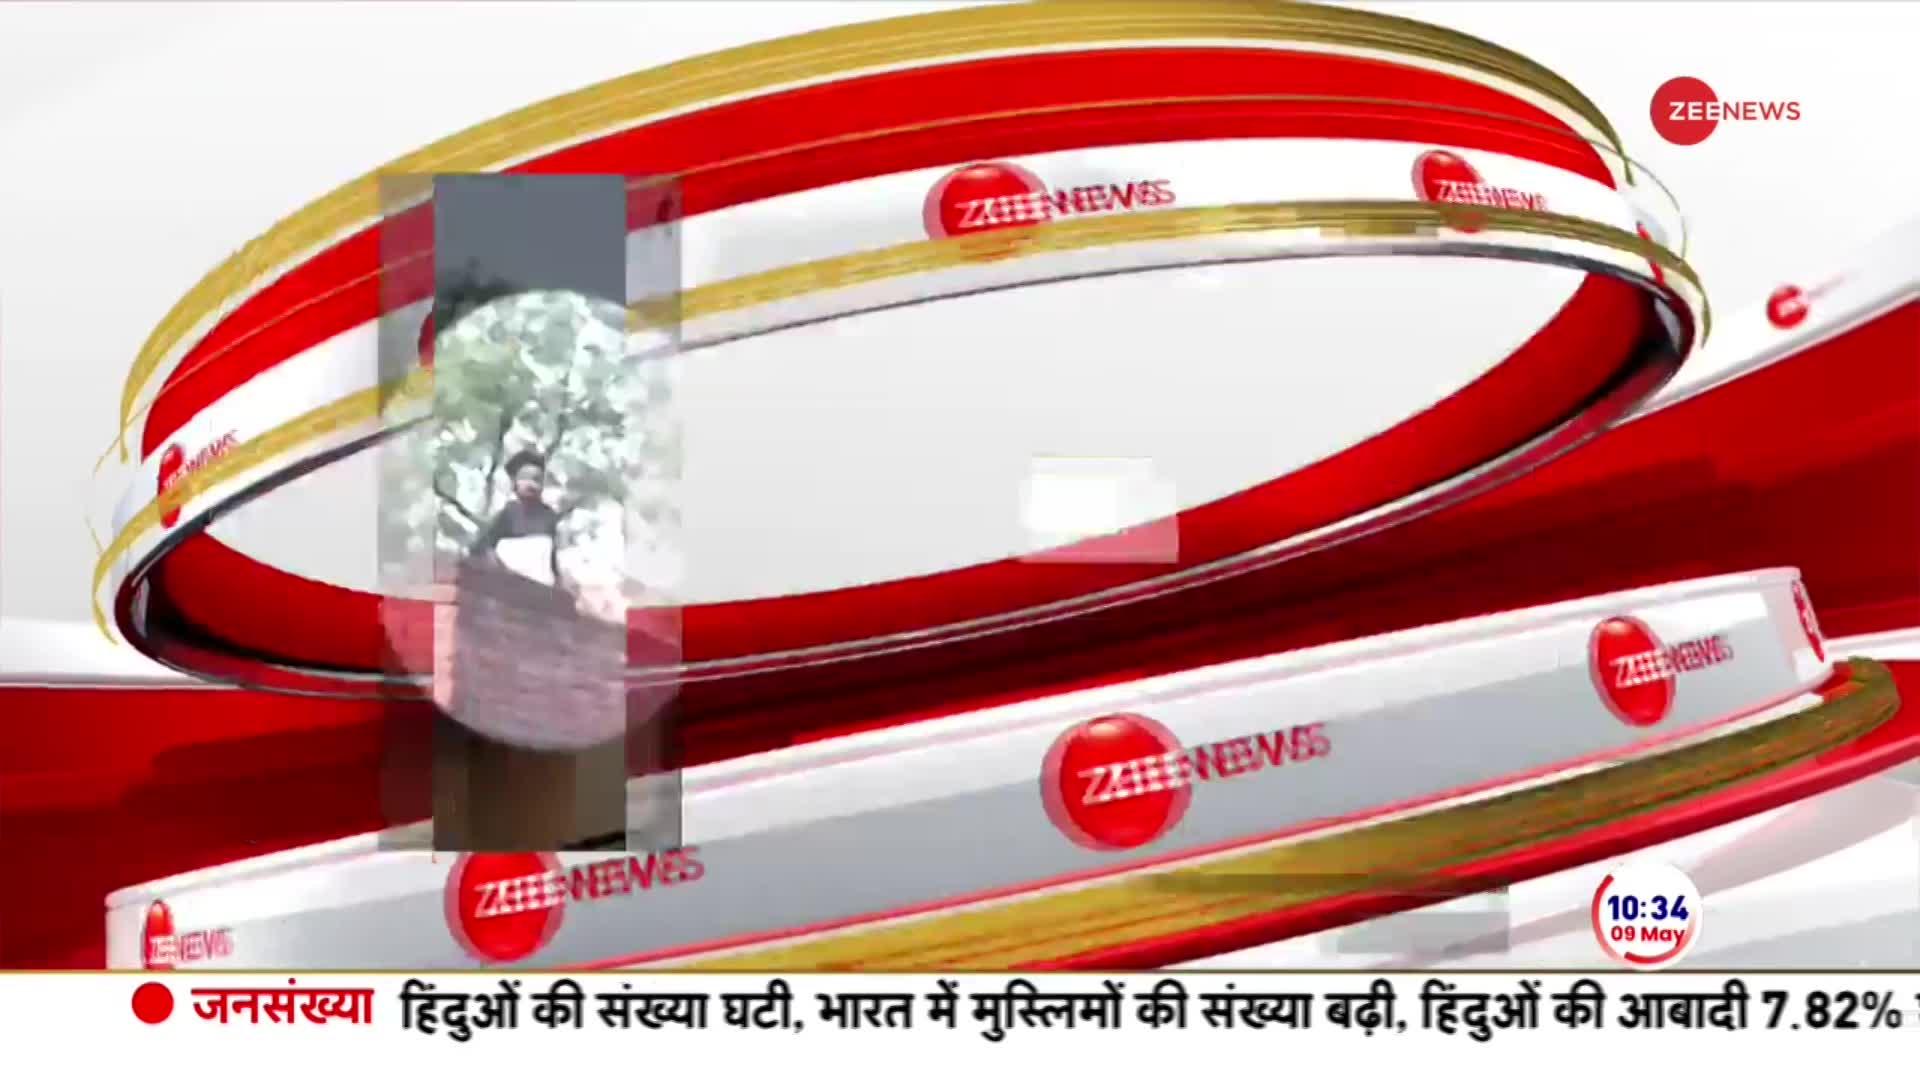 UP Baghpat Breaking News: यूपी के बागपत में दो पक्षों में मारपीट